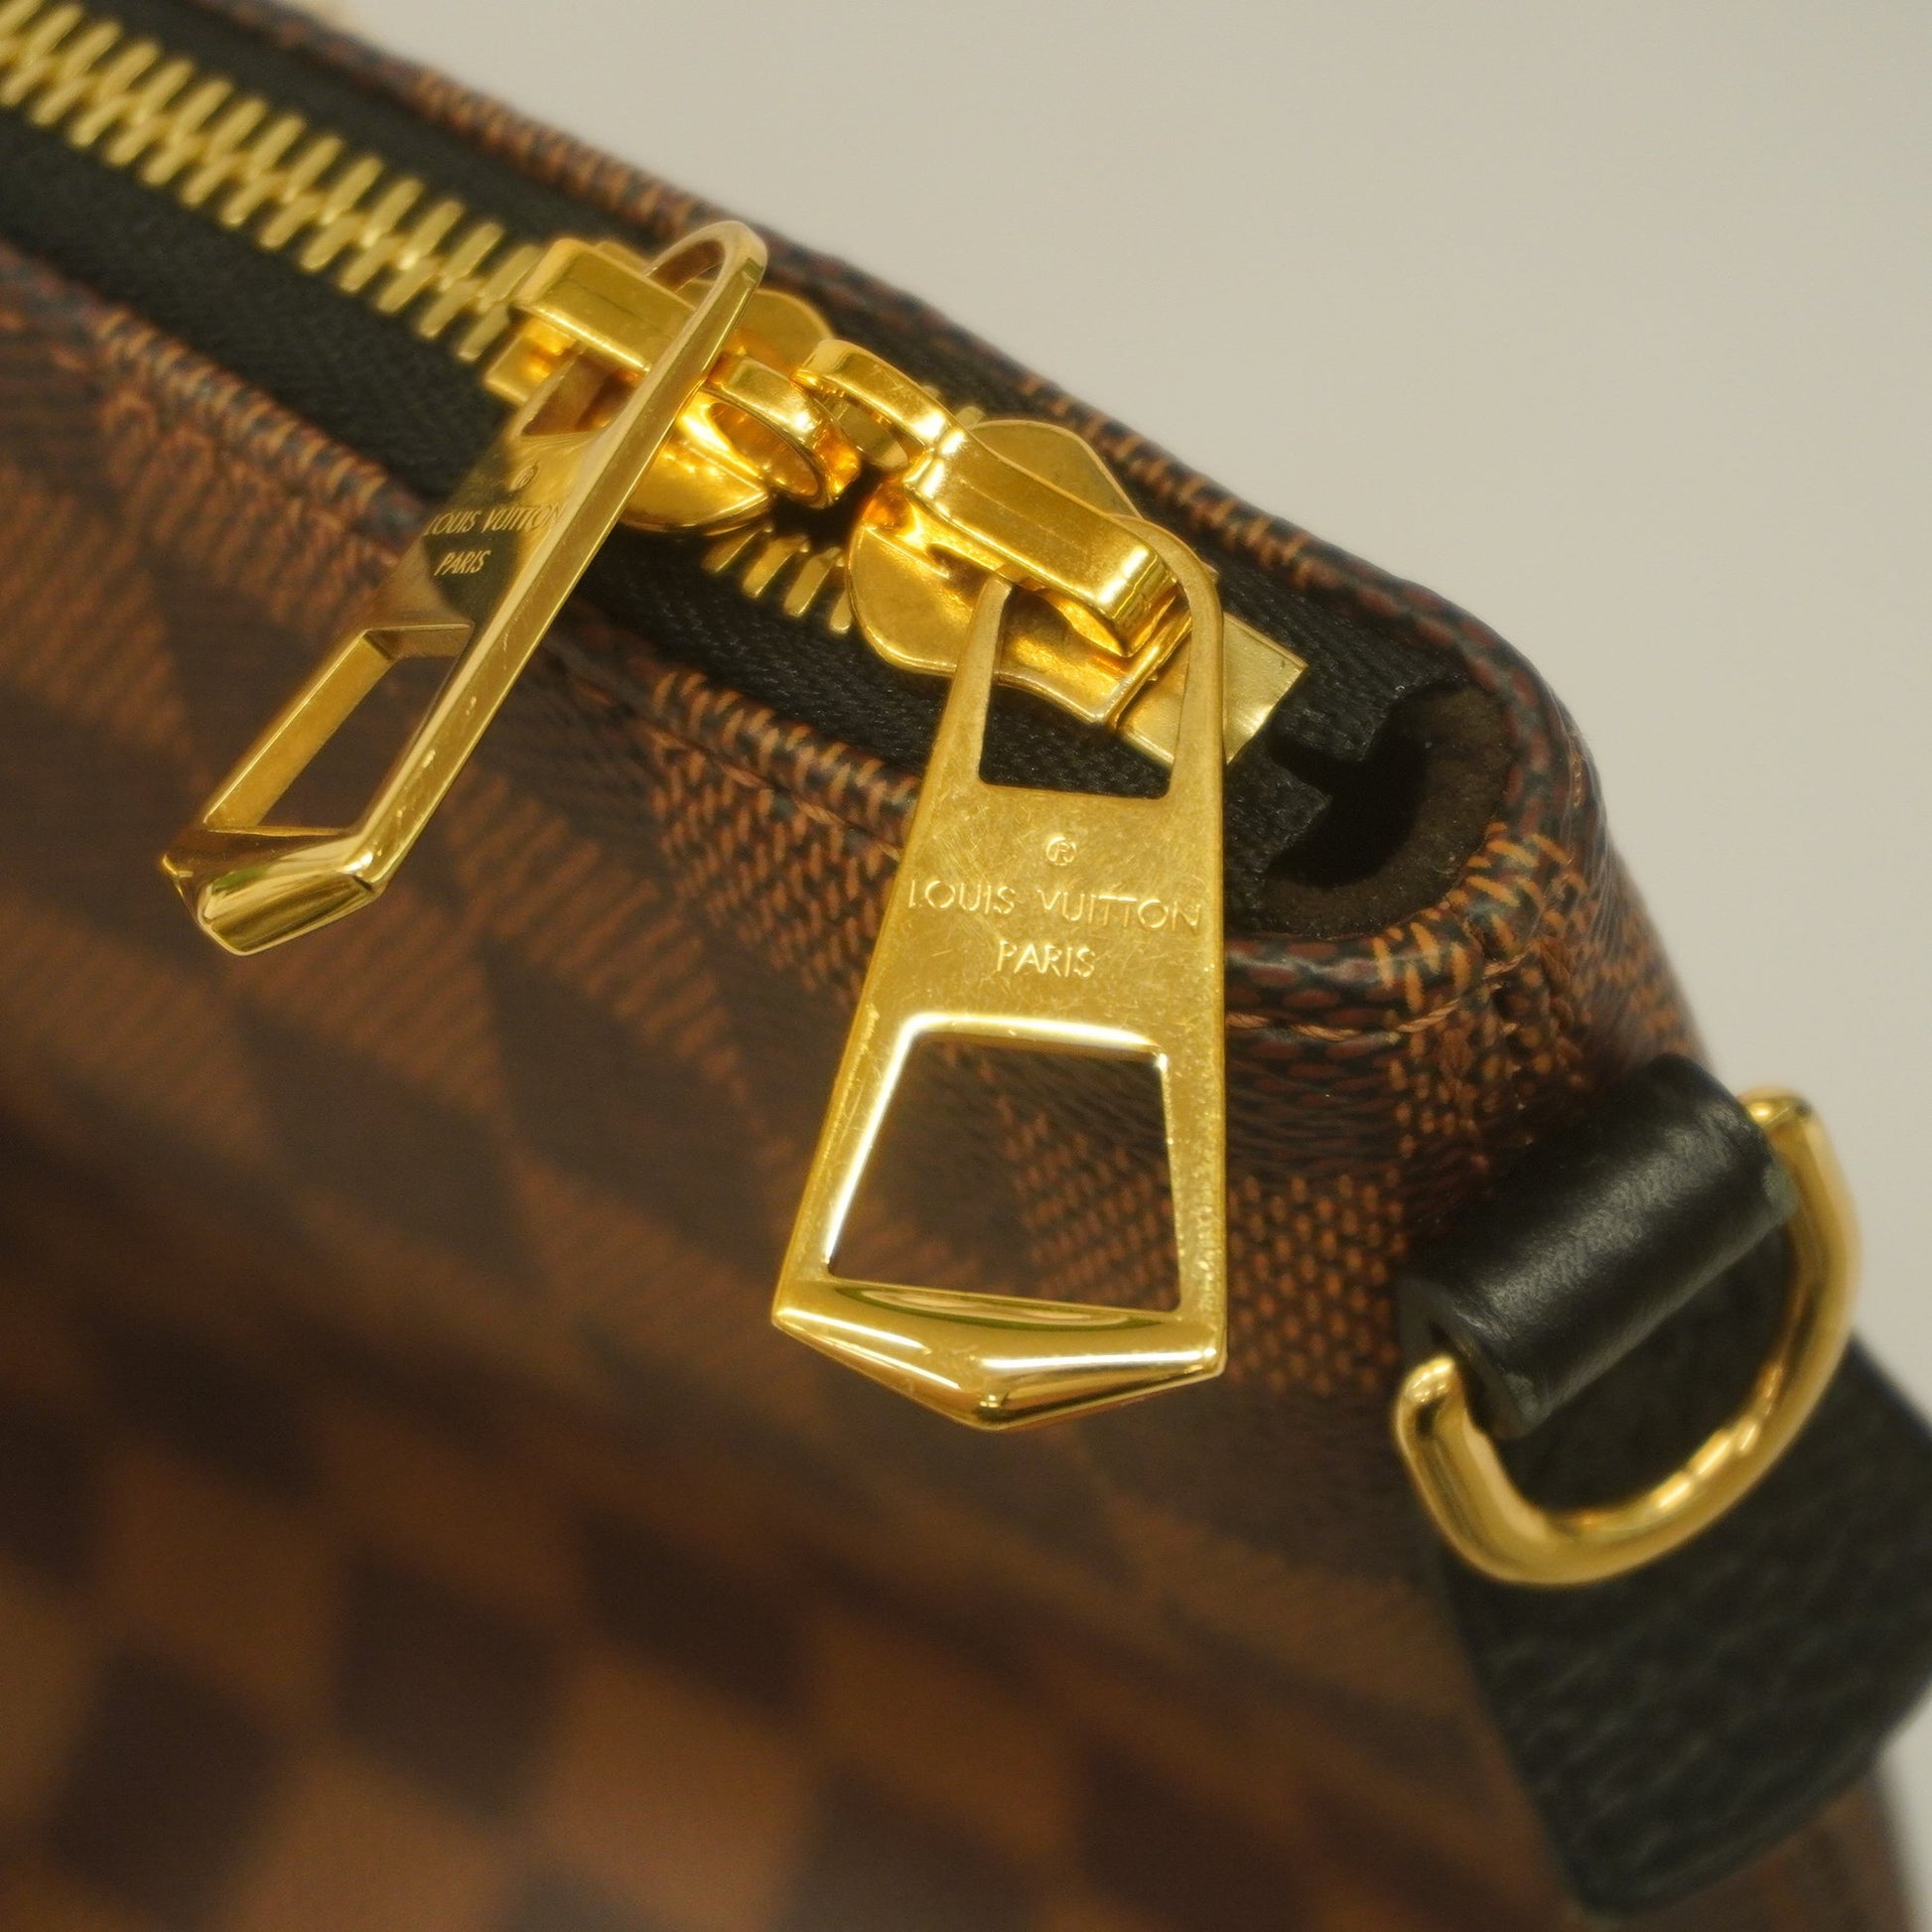 Auth Louis Vuitton Damier Hyde Park N41014 Women's Handbag Noir